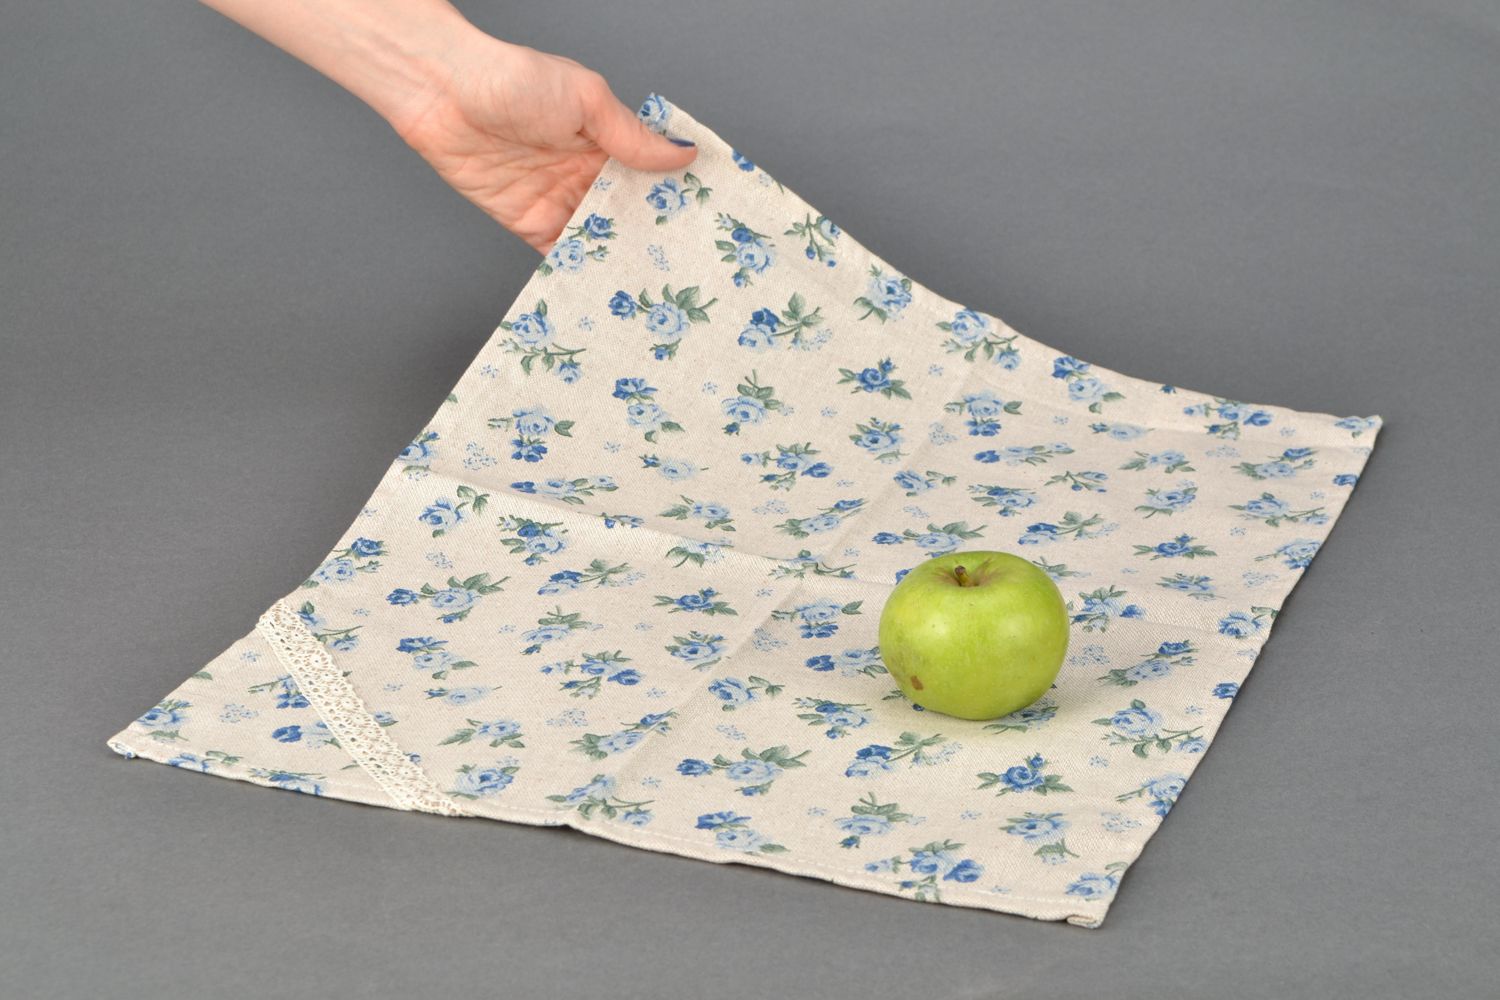 Декоративная салфетка в цветочек из ткани Голубая роза фото 2